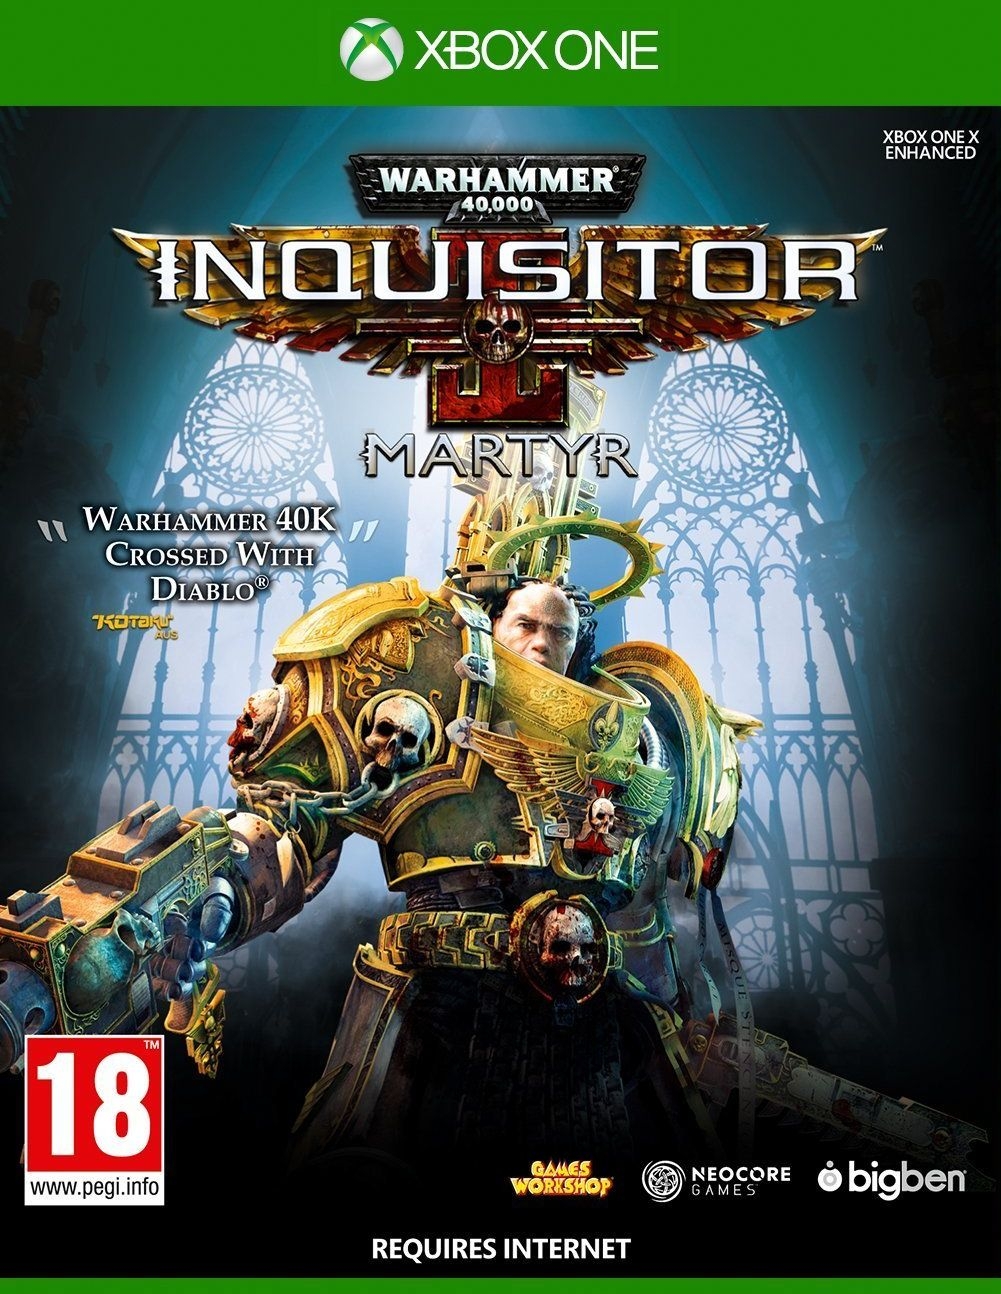 XBOXOne Warhammer 40K Inquisitor Martyr